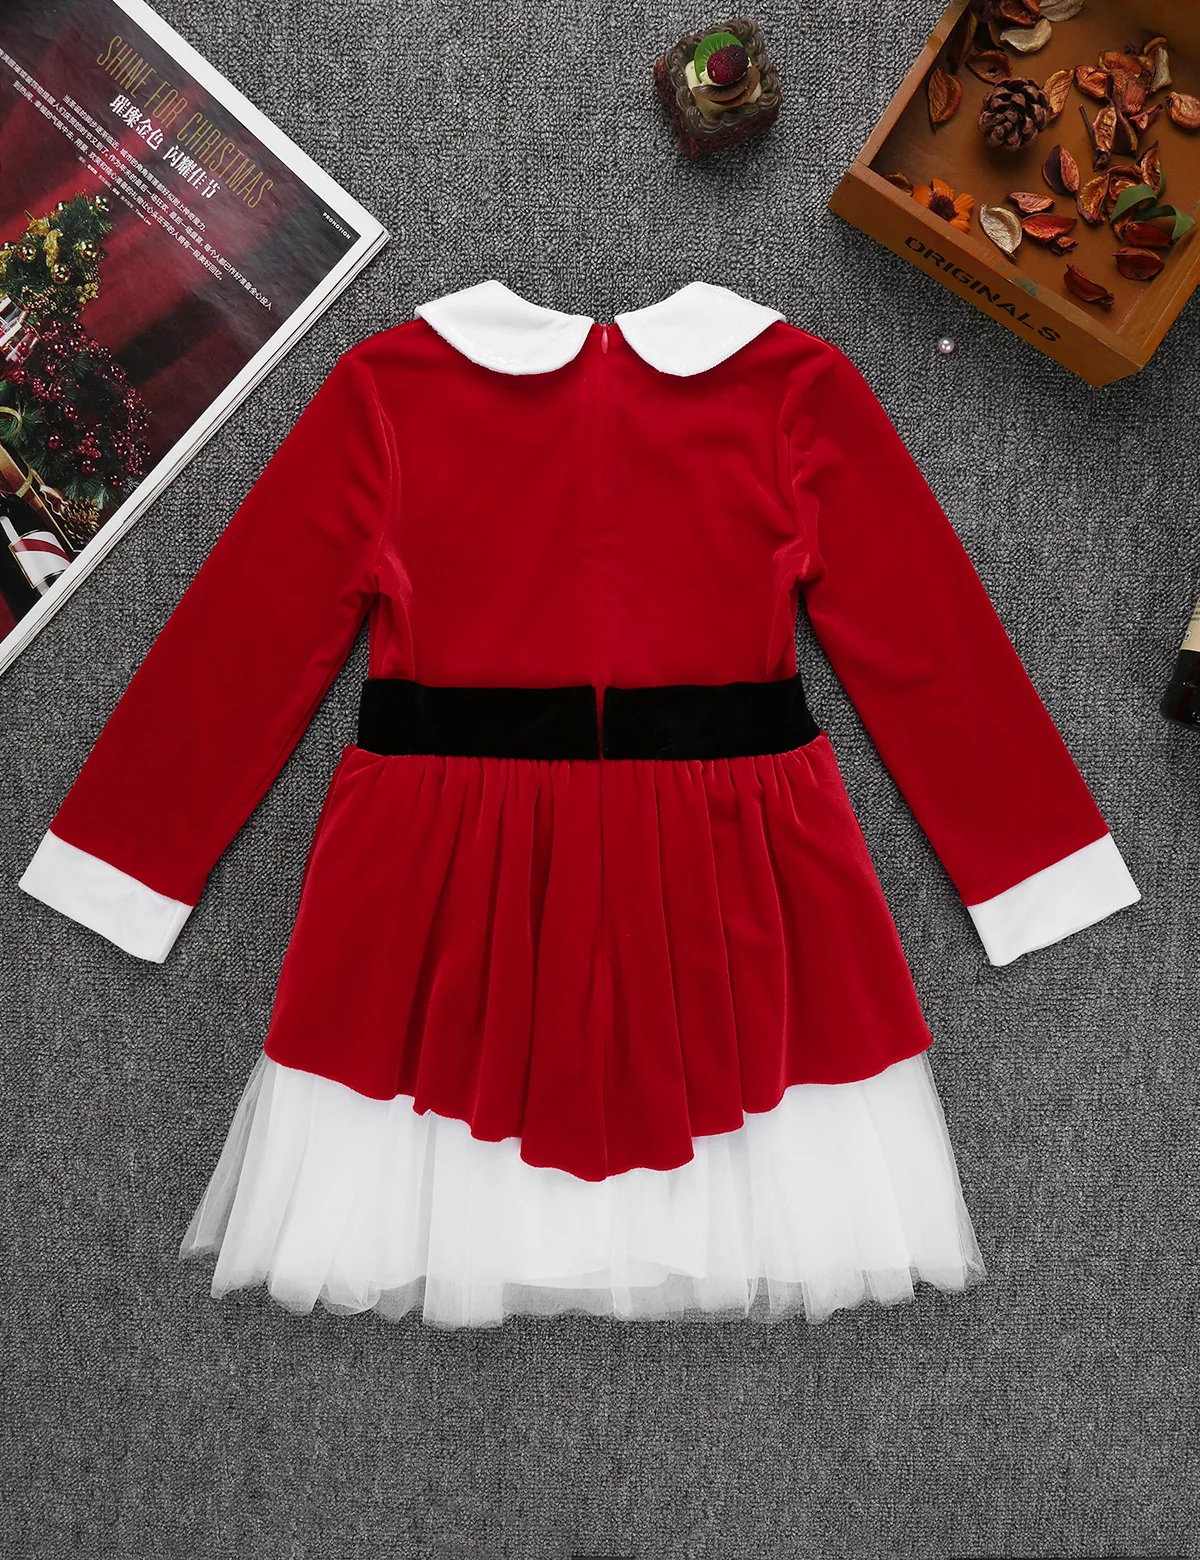 Детский красный костюм Санта-Клауса для девочек, одежда для костюмированной вечеринки на Рождество, мягкий бархатный с длинными рукавами, декоративное Сетчатое платье с поясом и шляпой